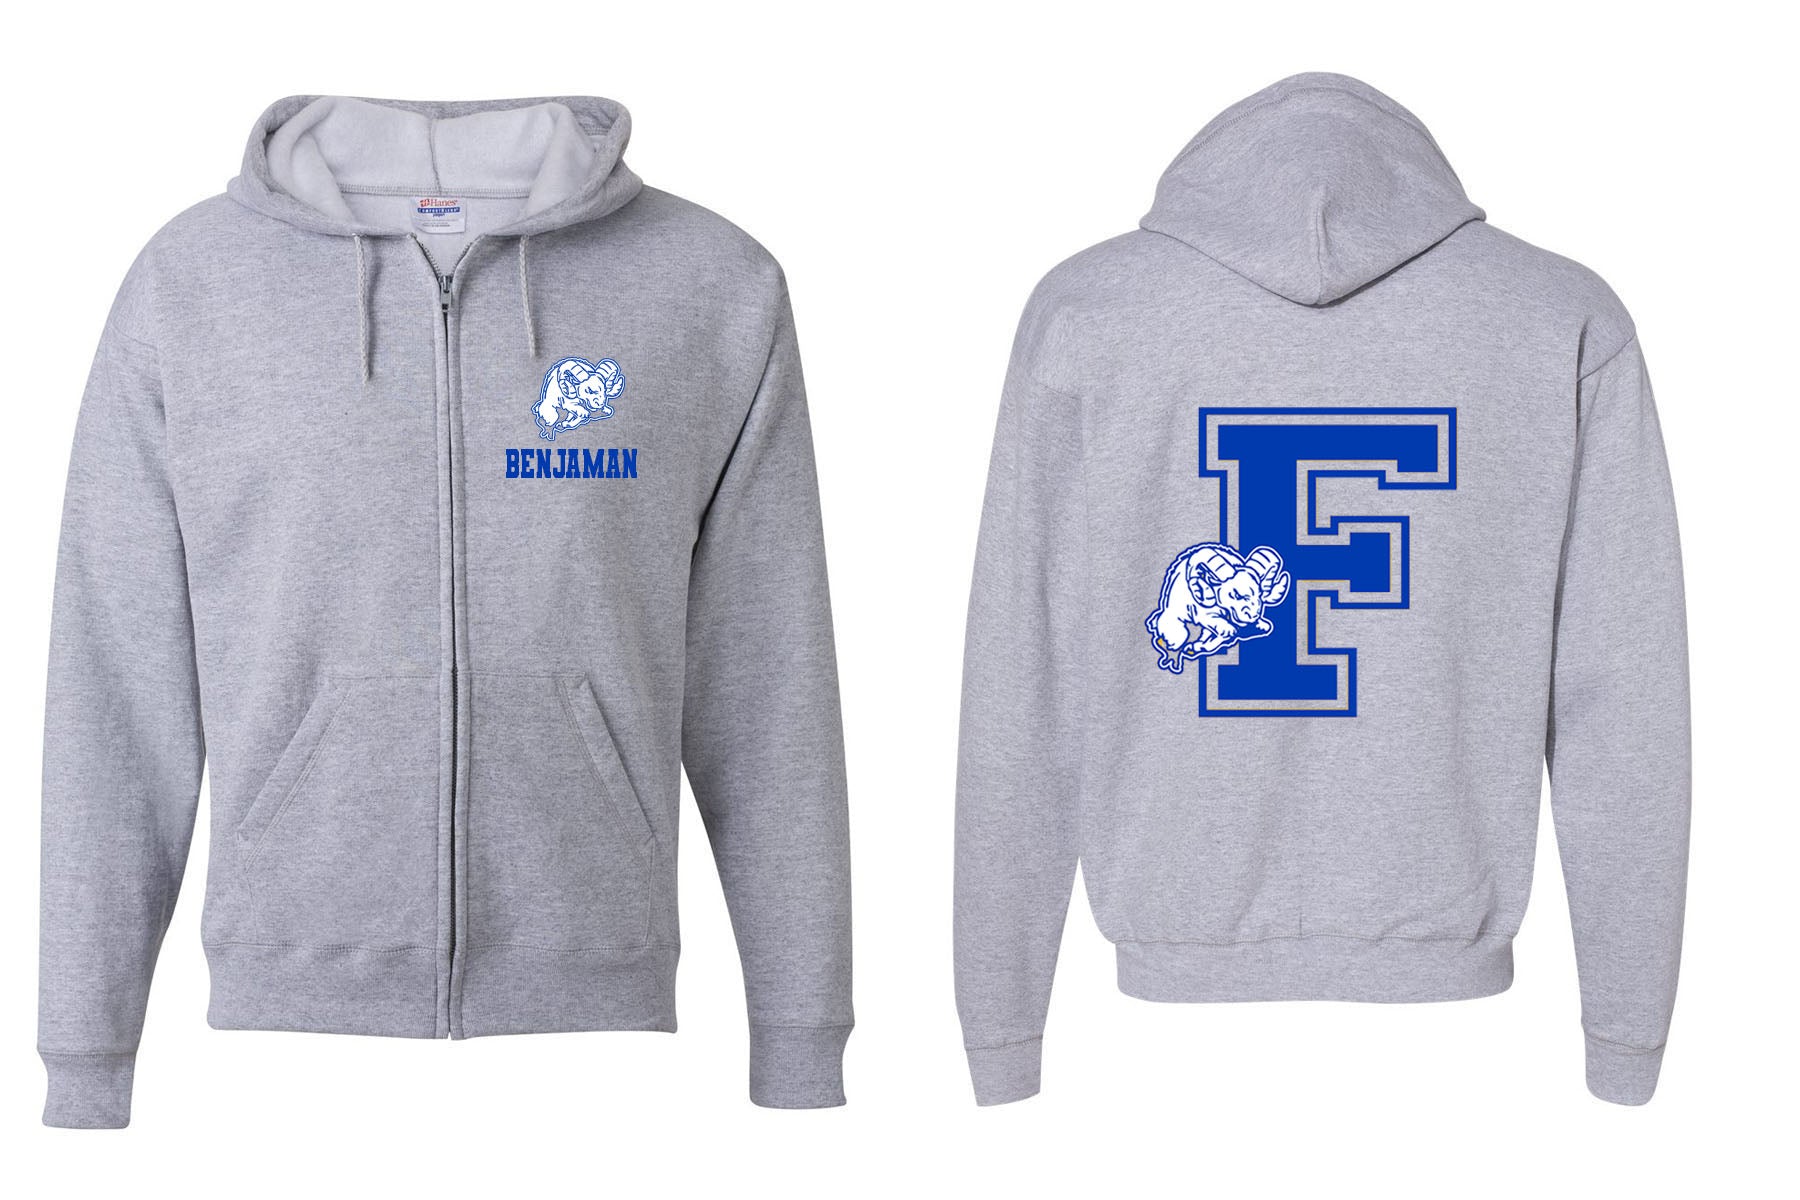 Franklin School design 1 Zip up Sweatshirt